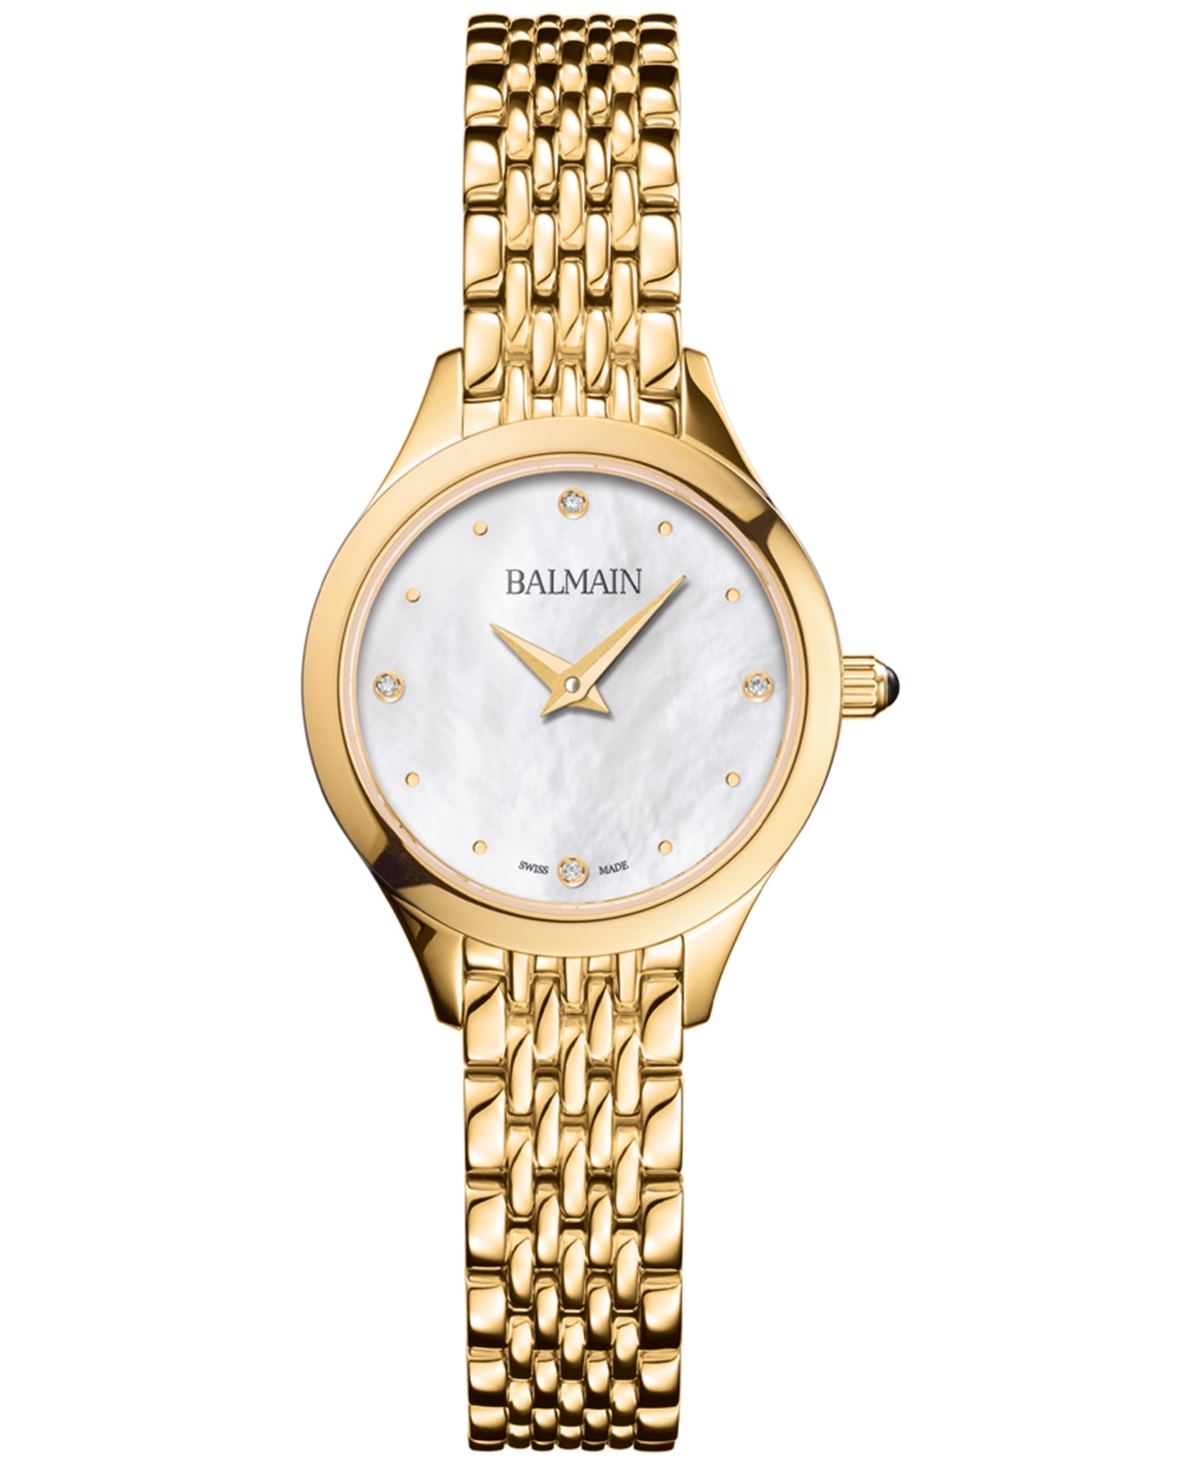 Women's Swiss Balmain de Balmain Diamond Accent Gold Pvd Stainless Steel Bracelet Watch 25mm - Yellow